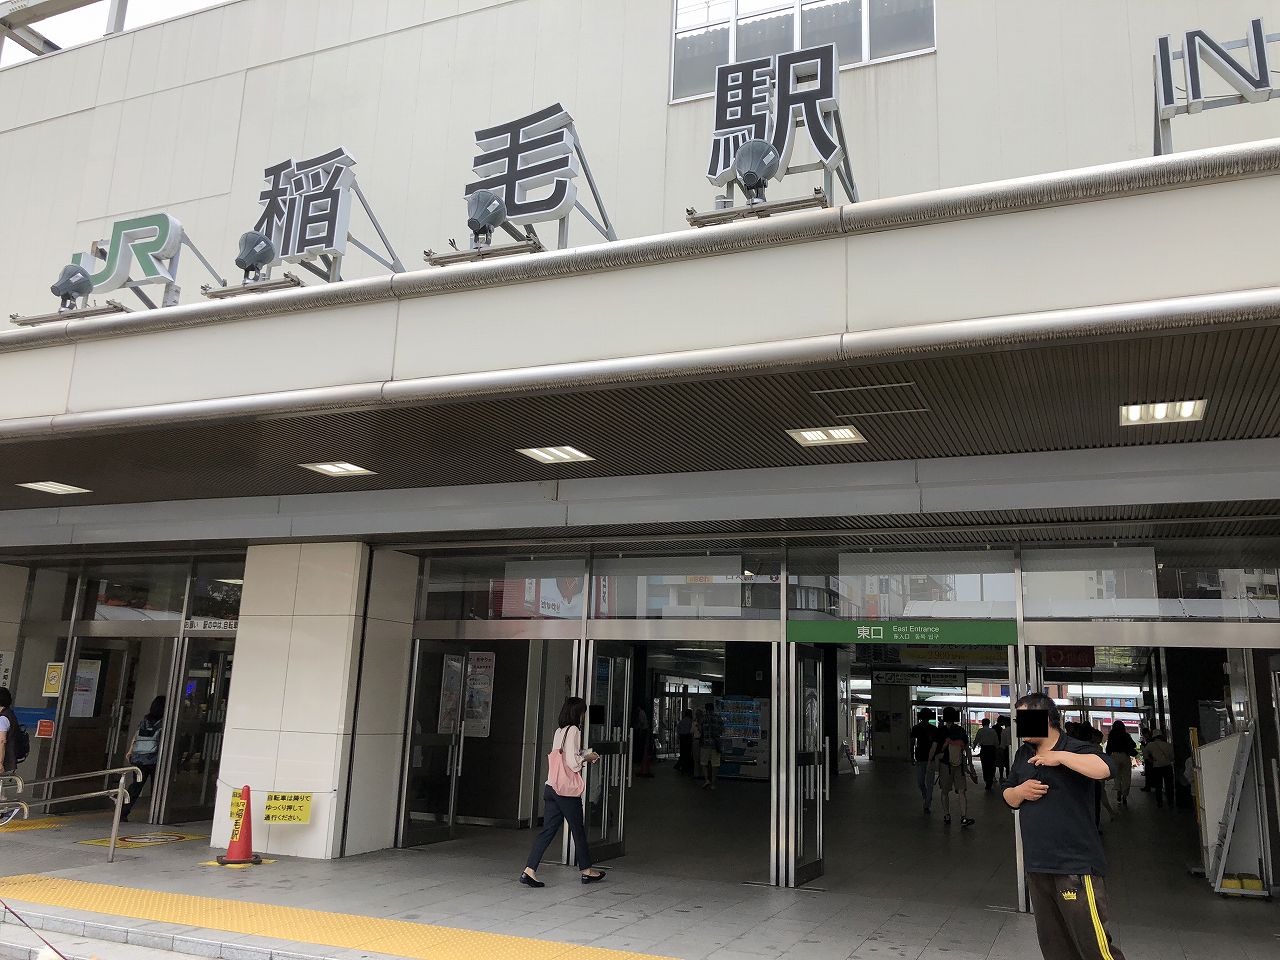 JR稲毛駅